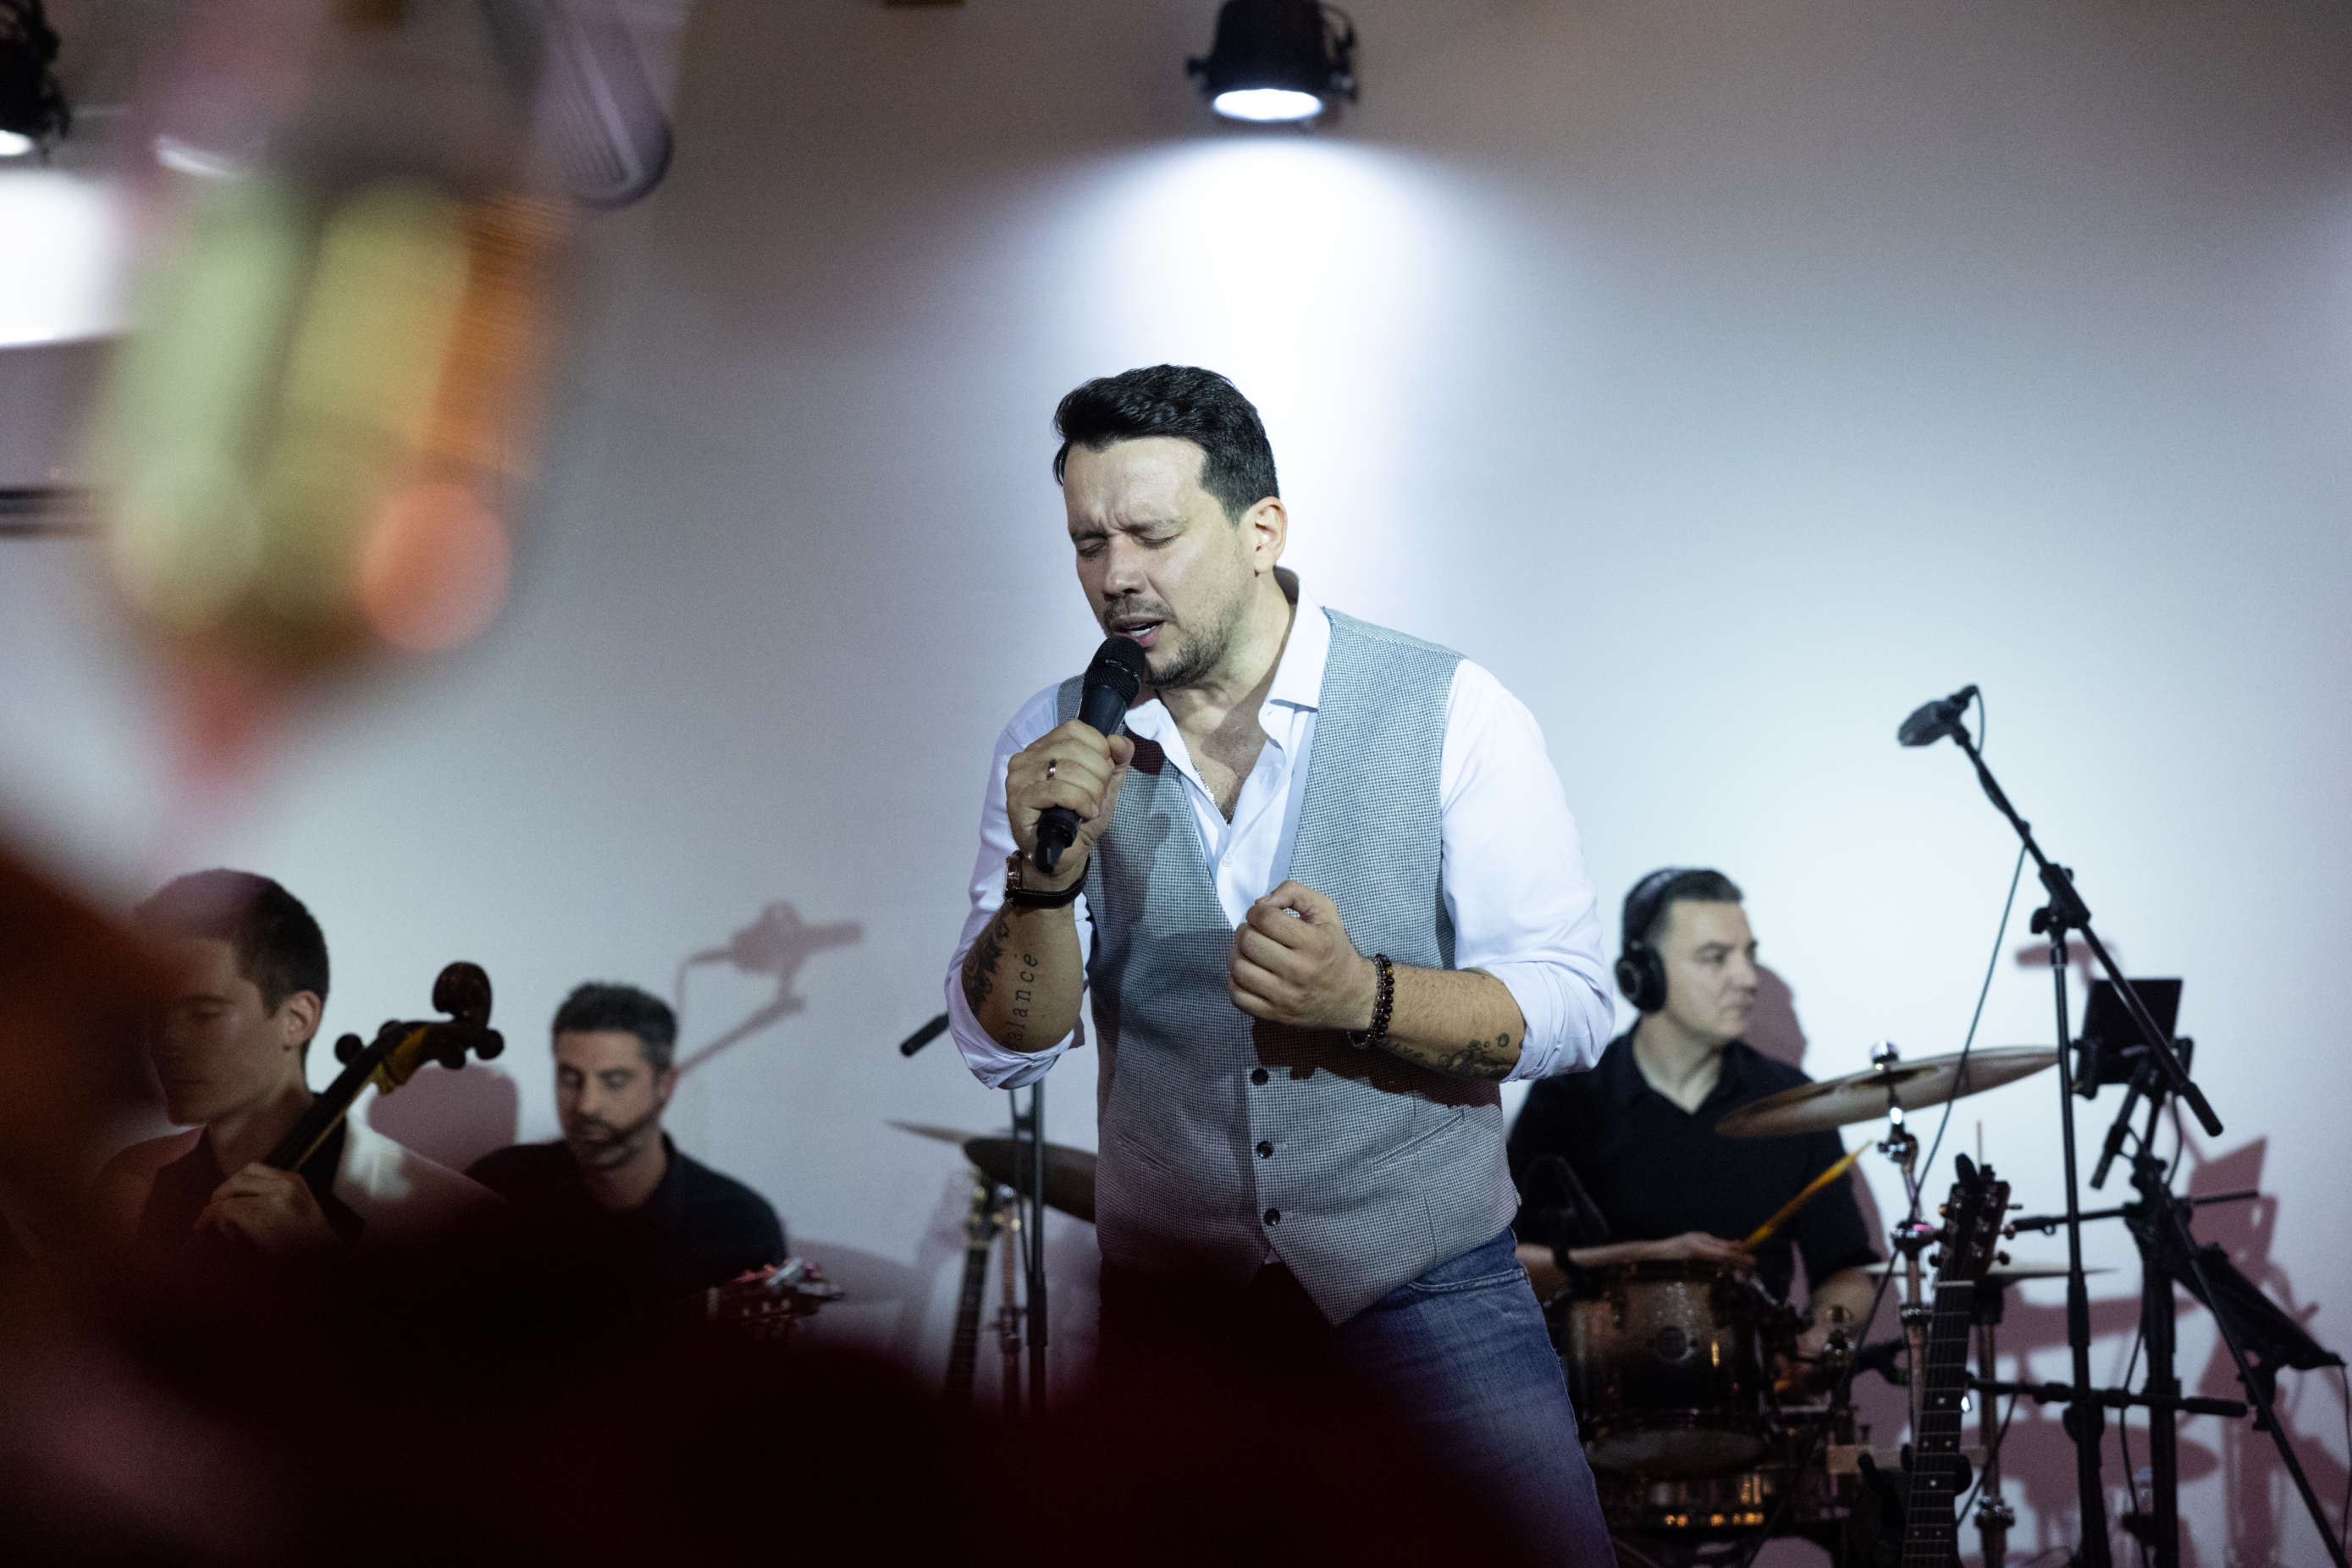 Glazbenik Marko Nikolić predstavio svoj novi album ‘Dođi da te volim’